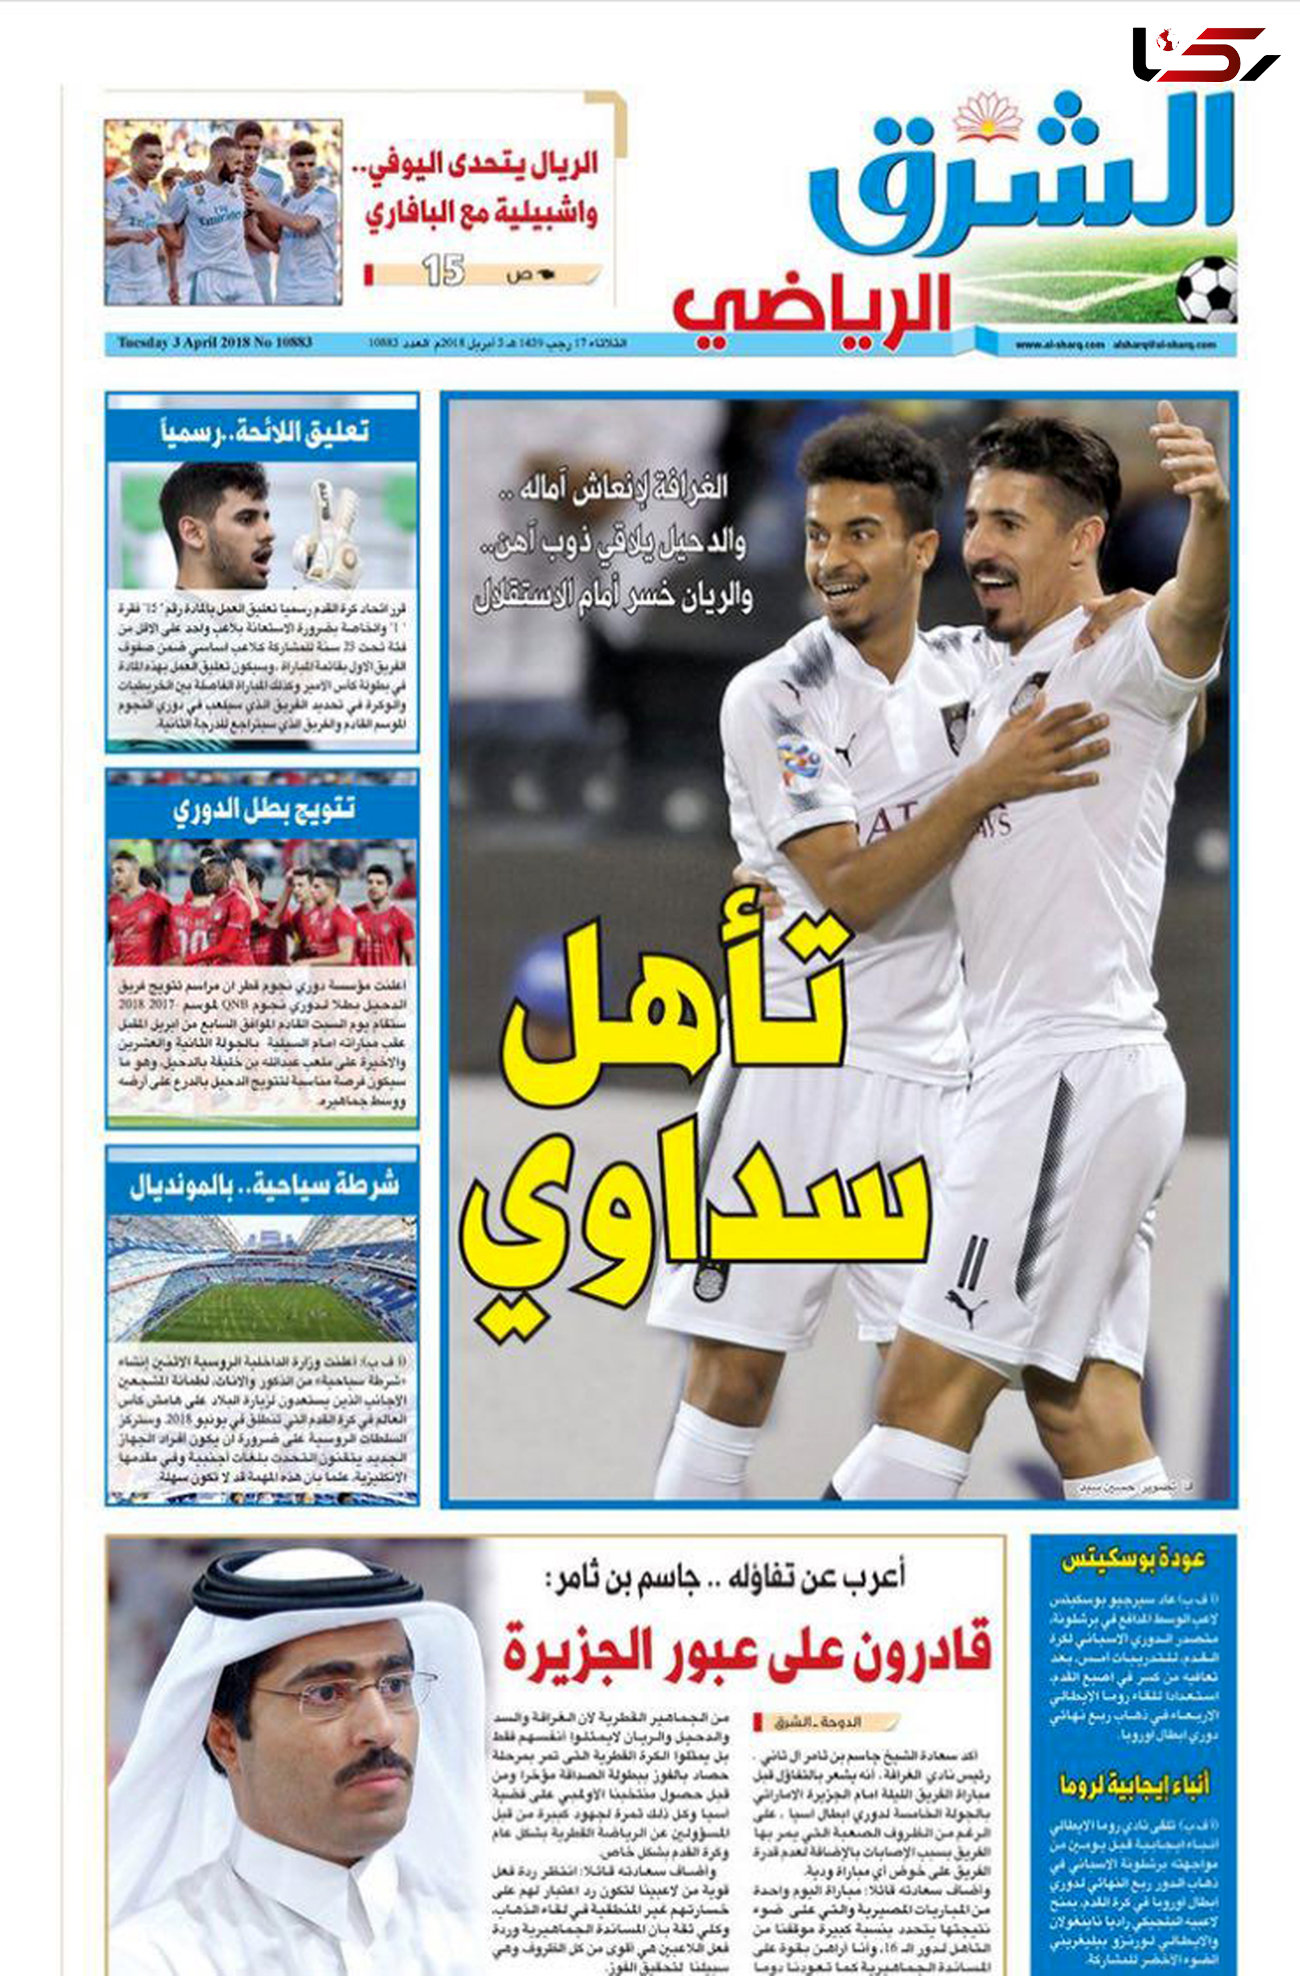 روزنامه های قطری در اختیار السد + عکس